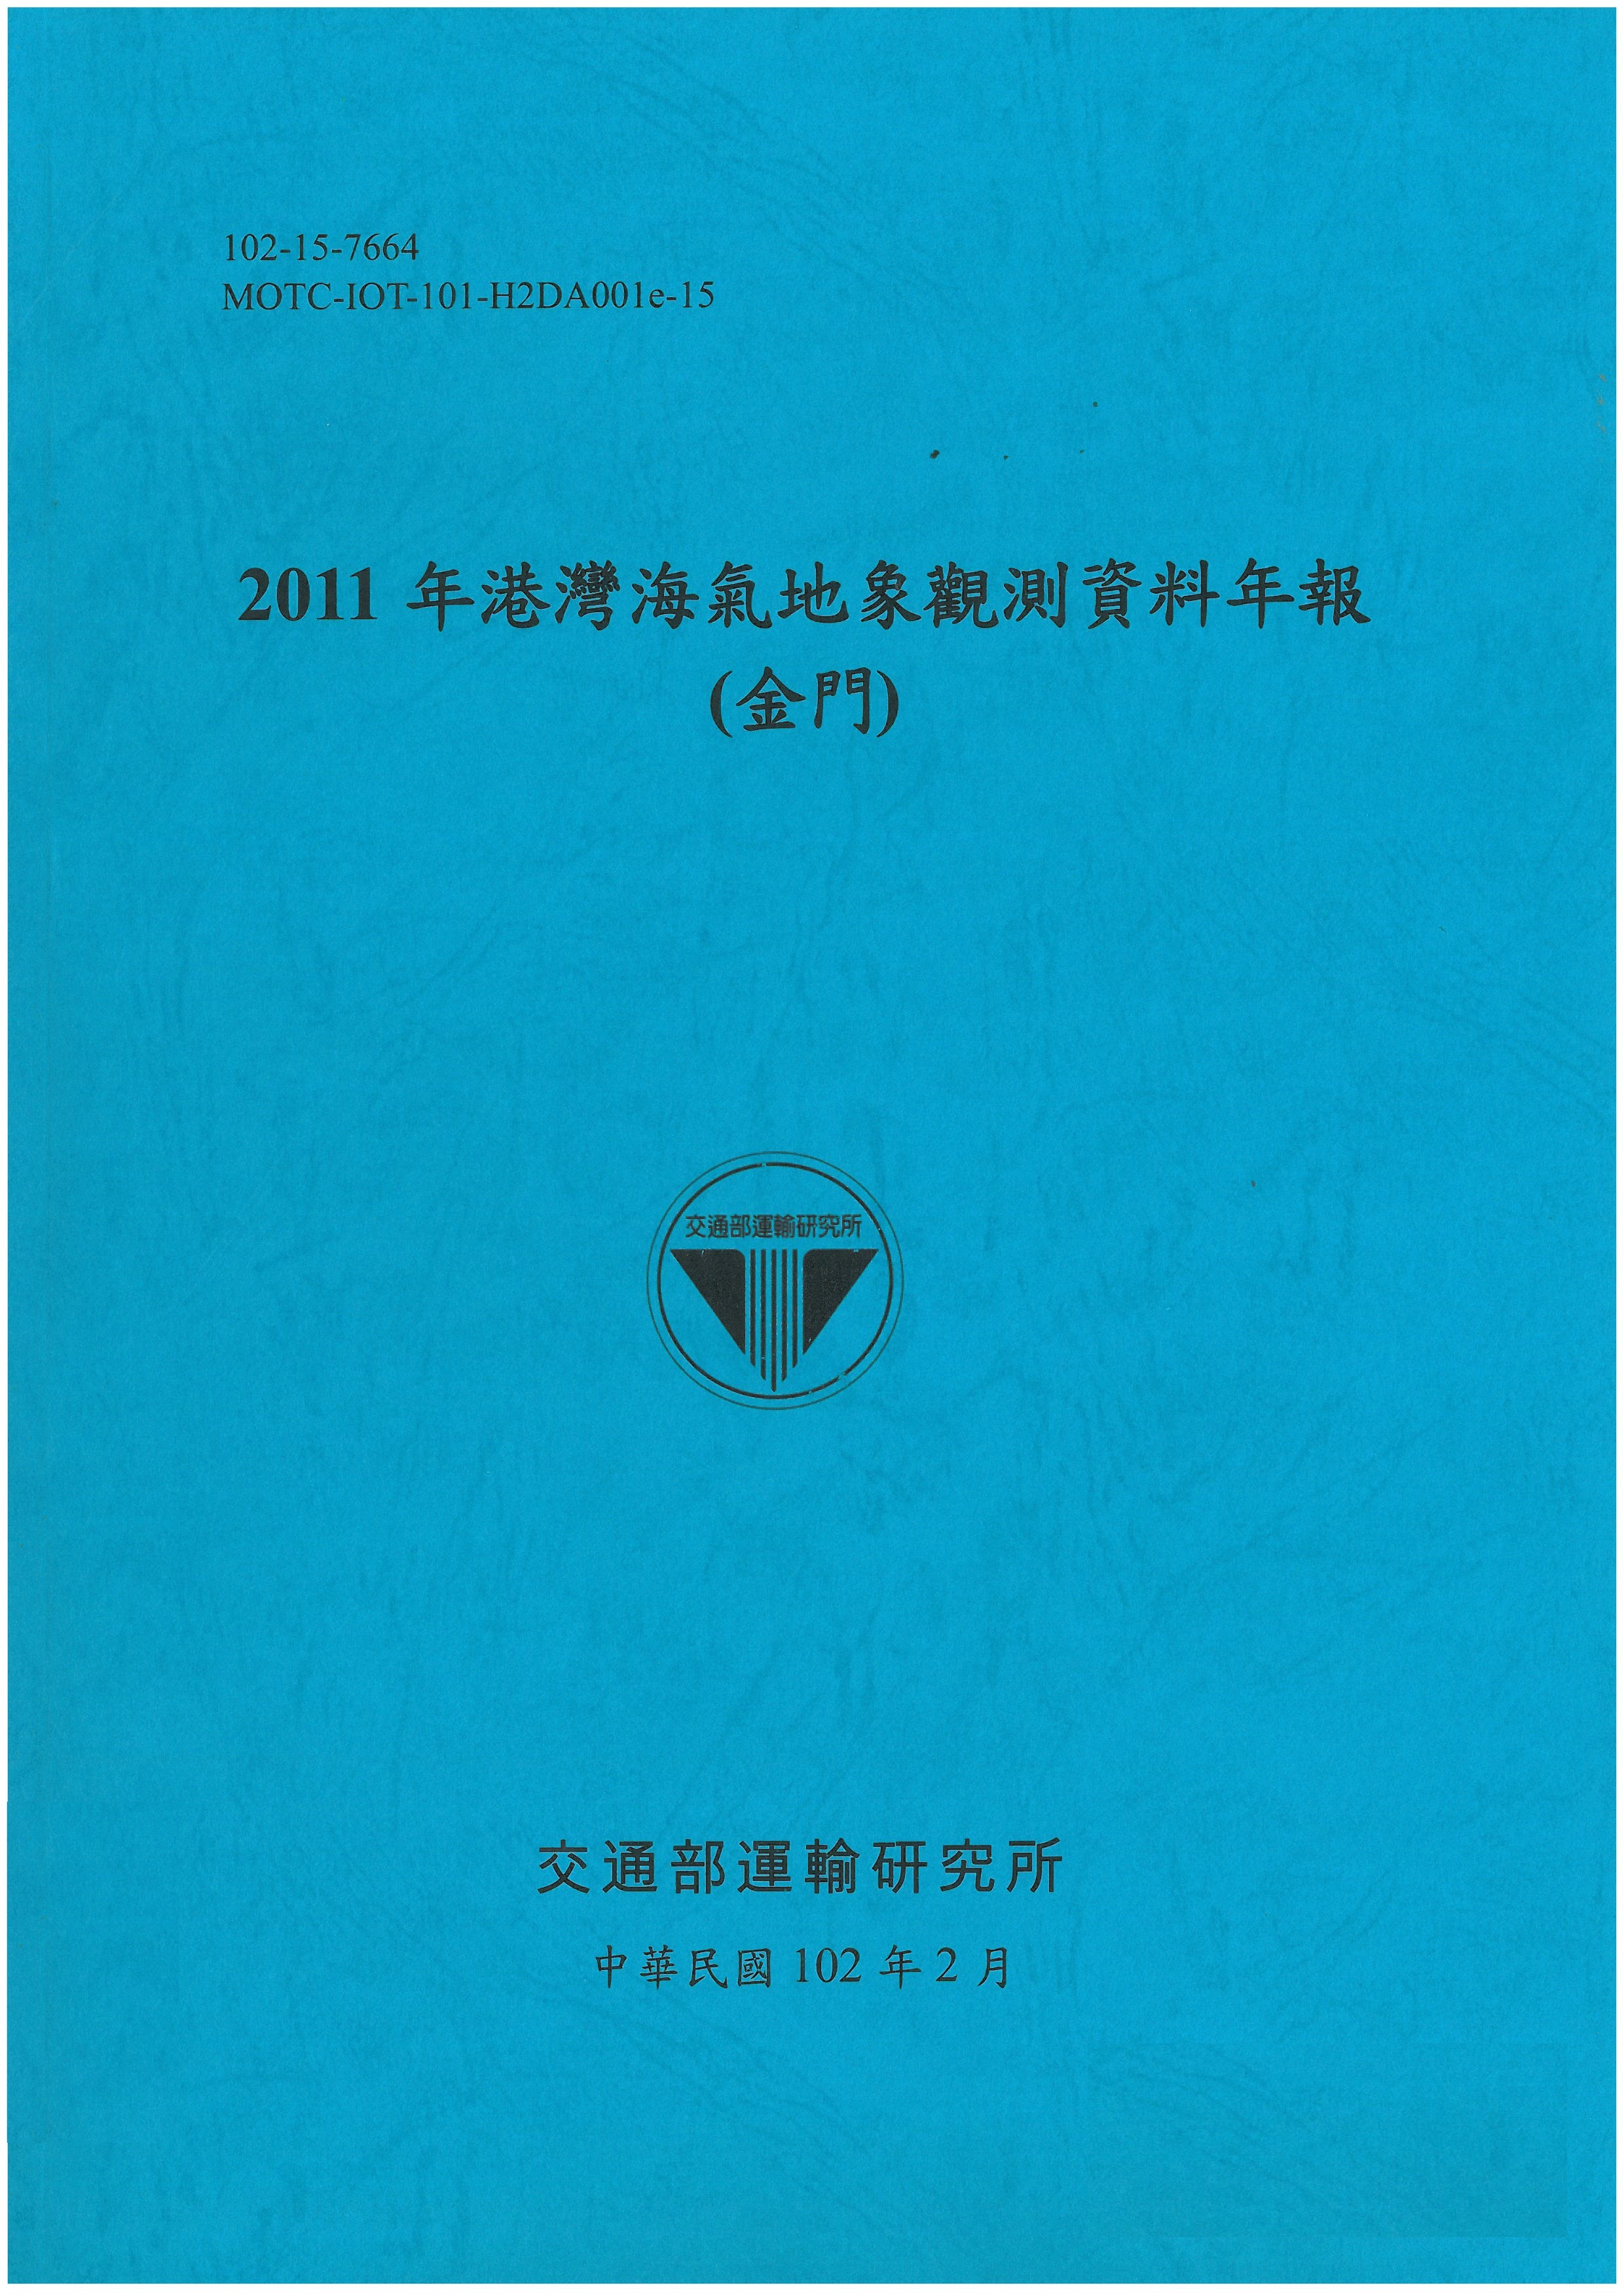 2011年港灣海氣地象觀測資料年報(金門)